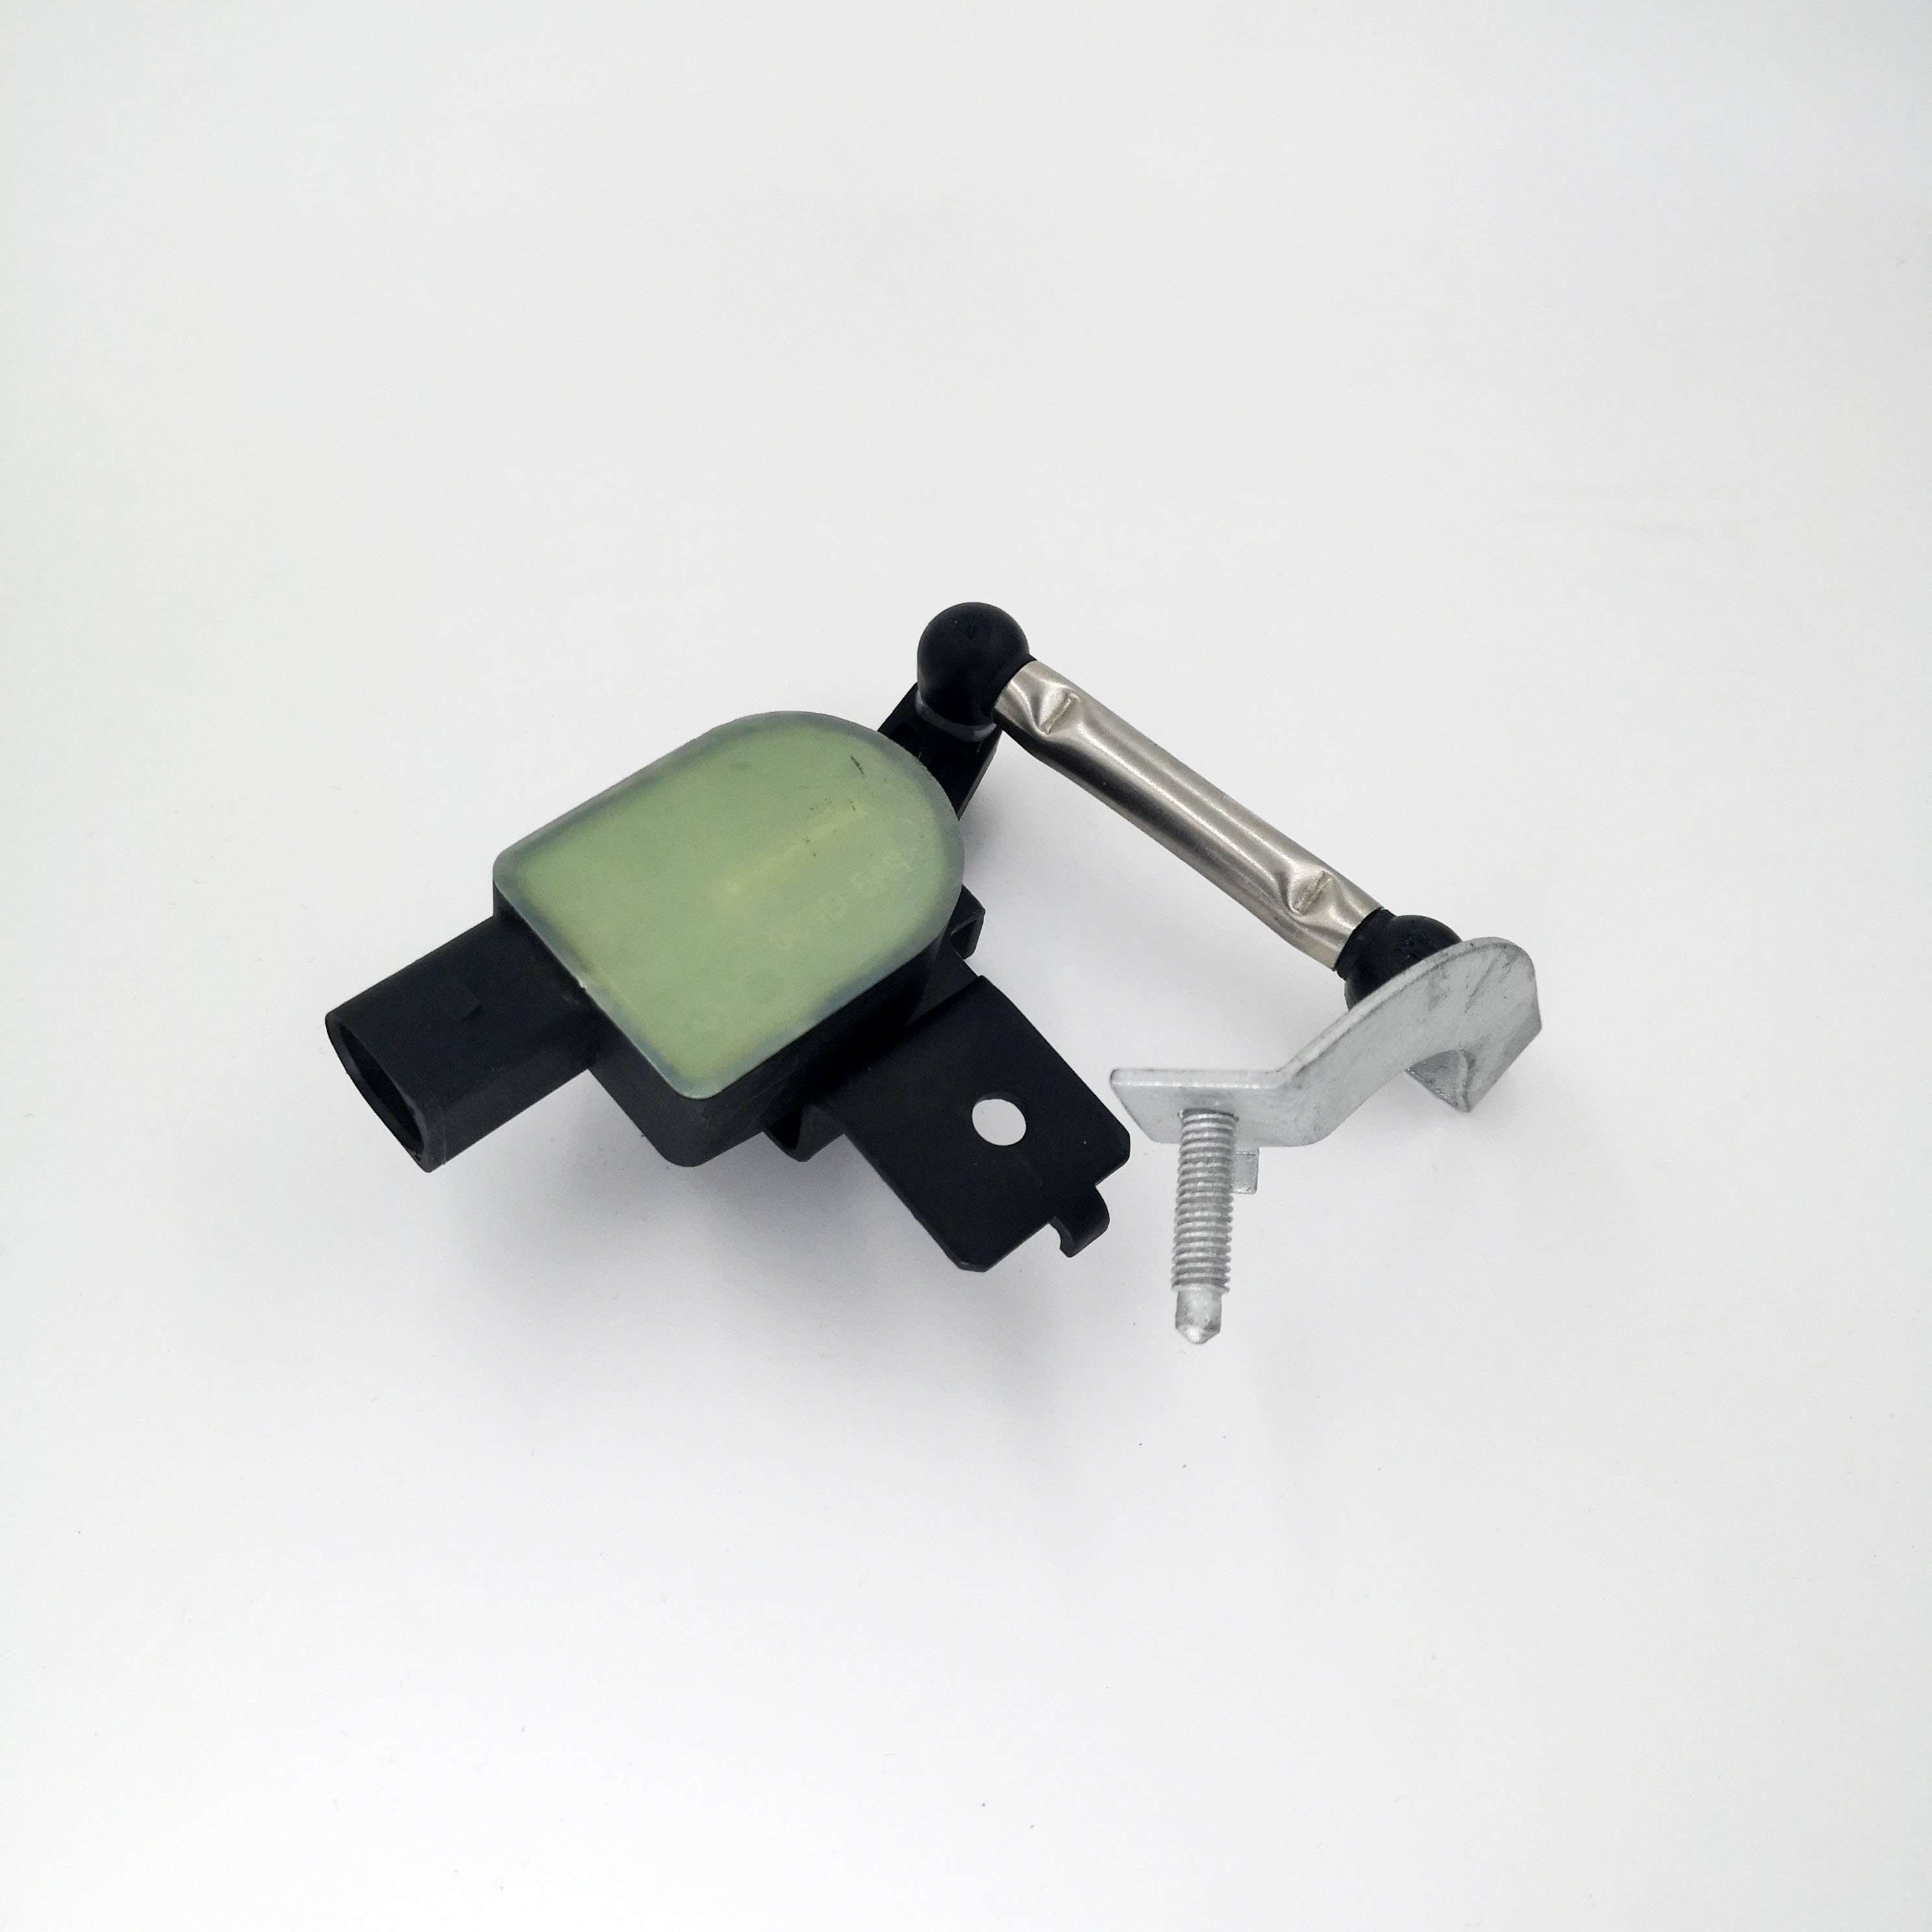 Headlight Level sensor Suspension height sensor for Vw Passat Golf Magotan 1K0941274B